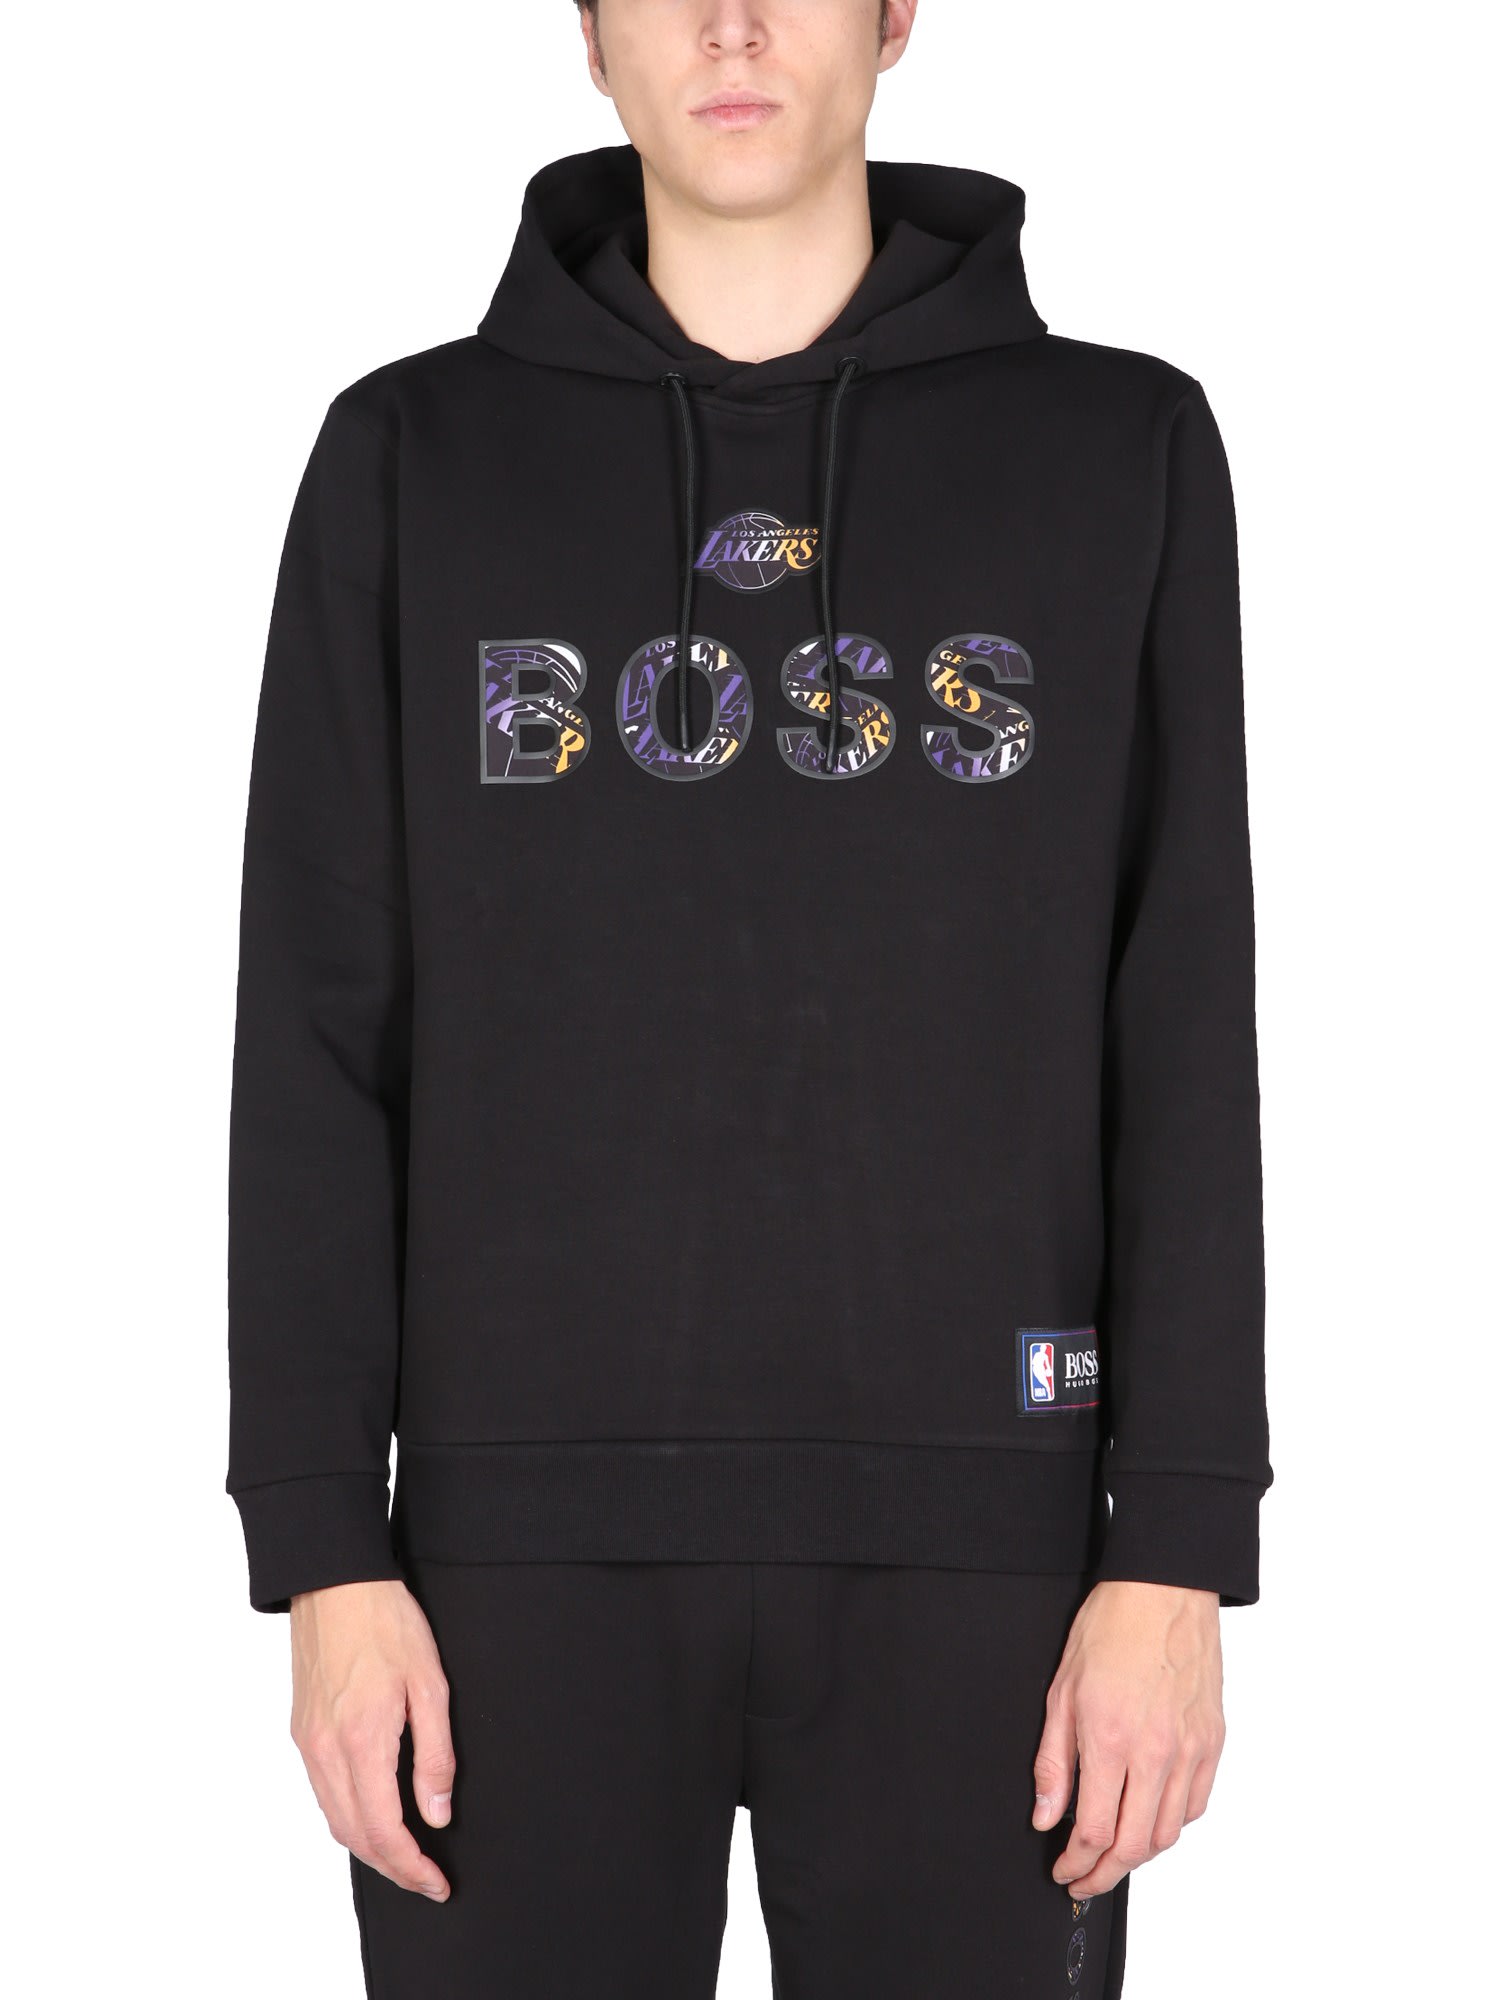 Hugo Boss Boss X Nba Sweatshirt